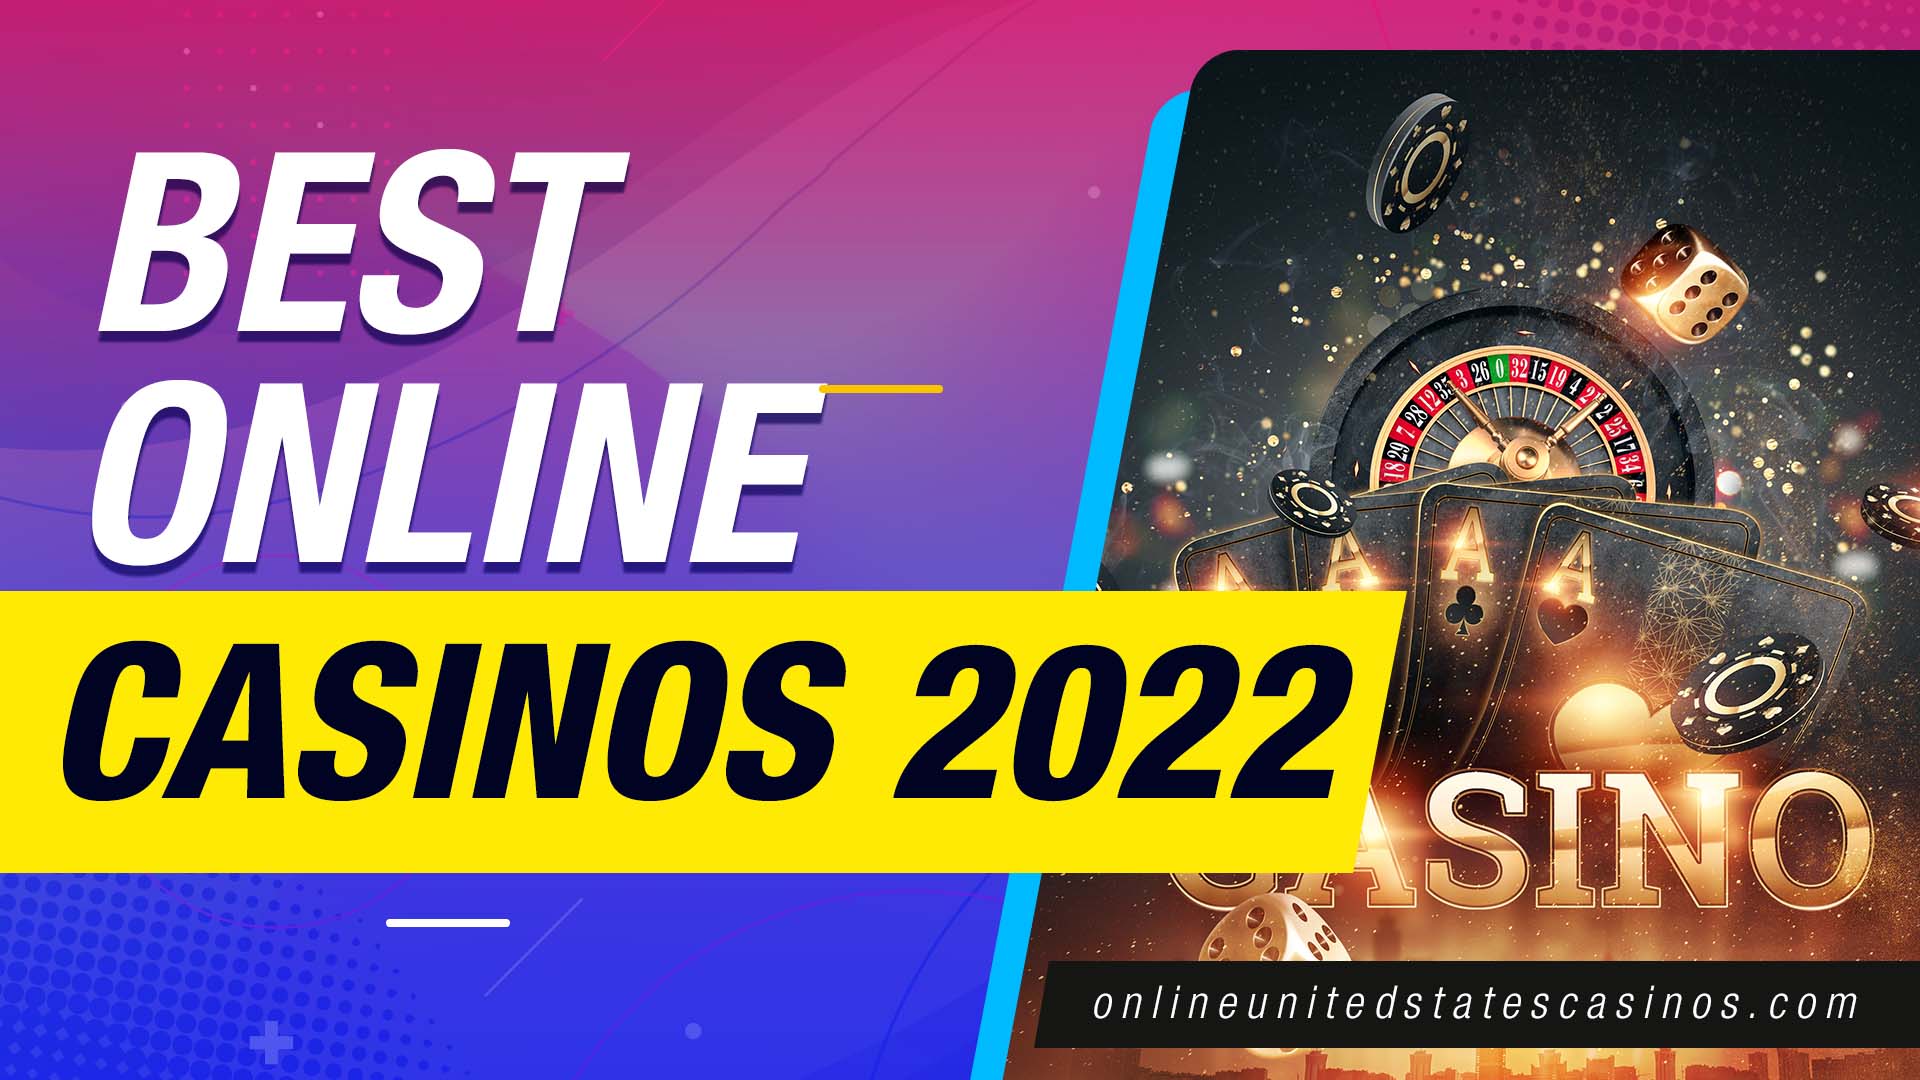 Casino Online Österreich: Halten Sie es einfach